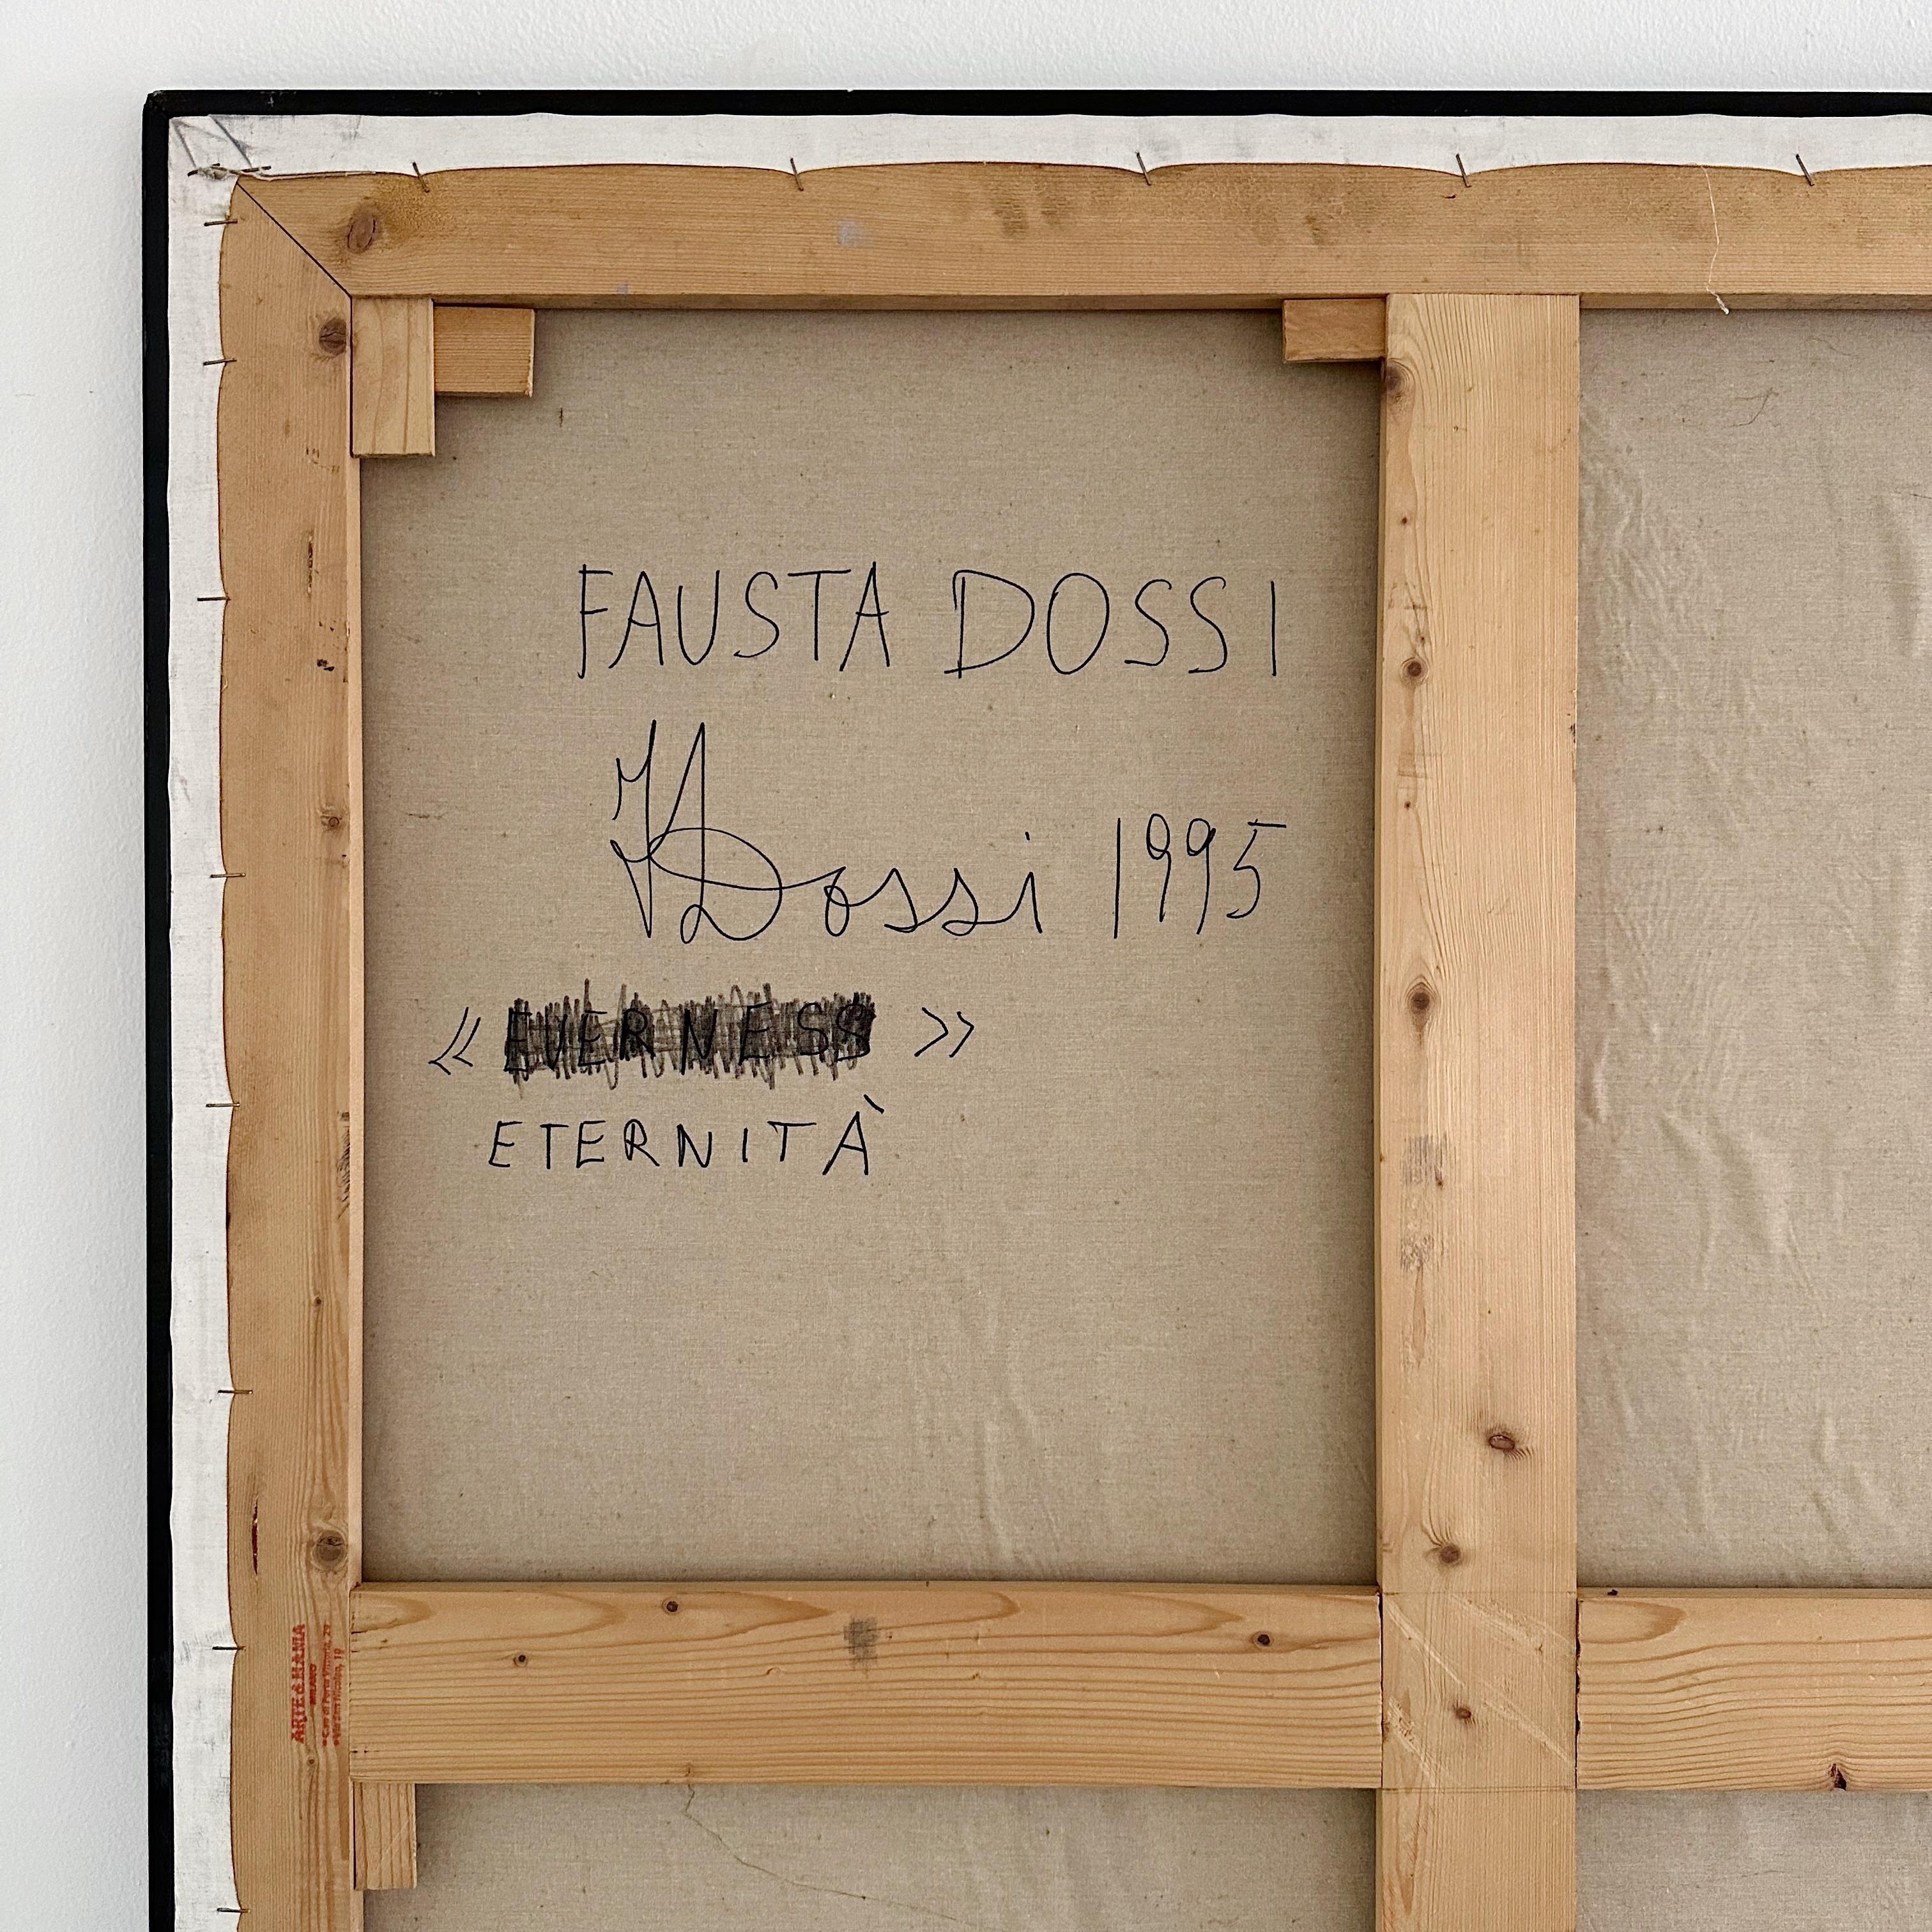 Fausta Dossi Oil on Canvas 